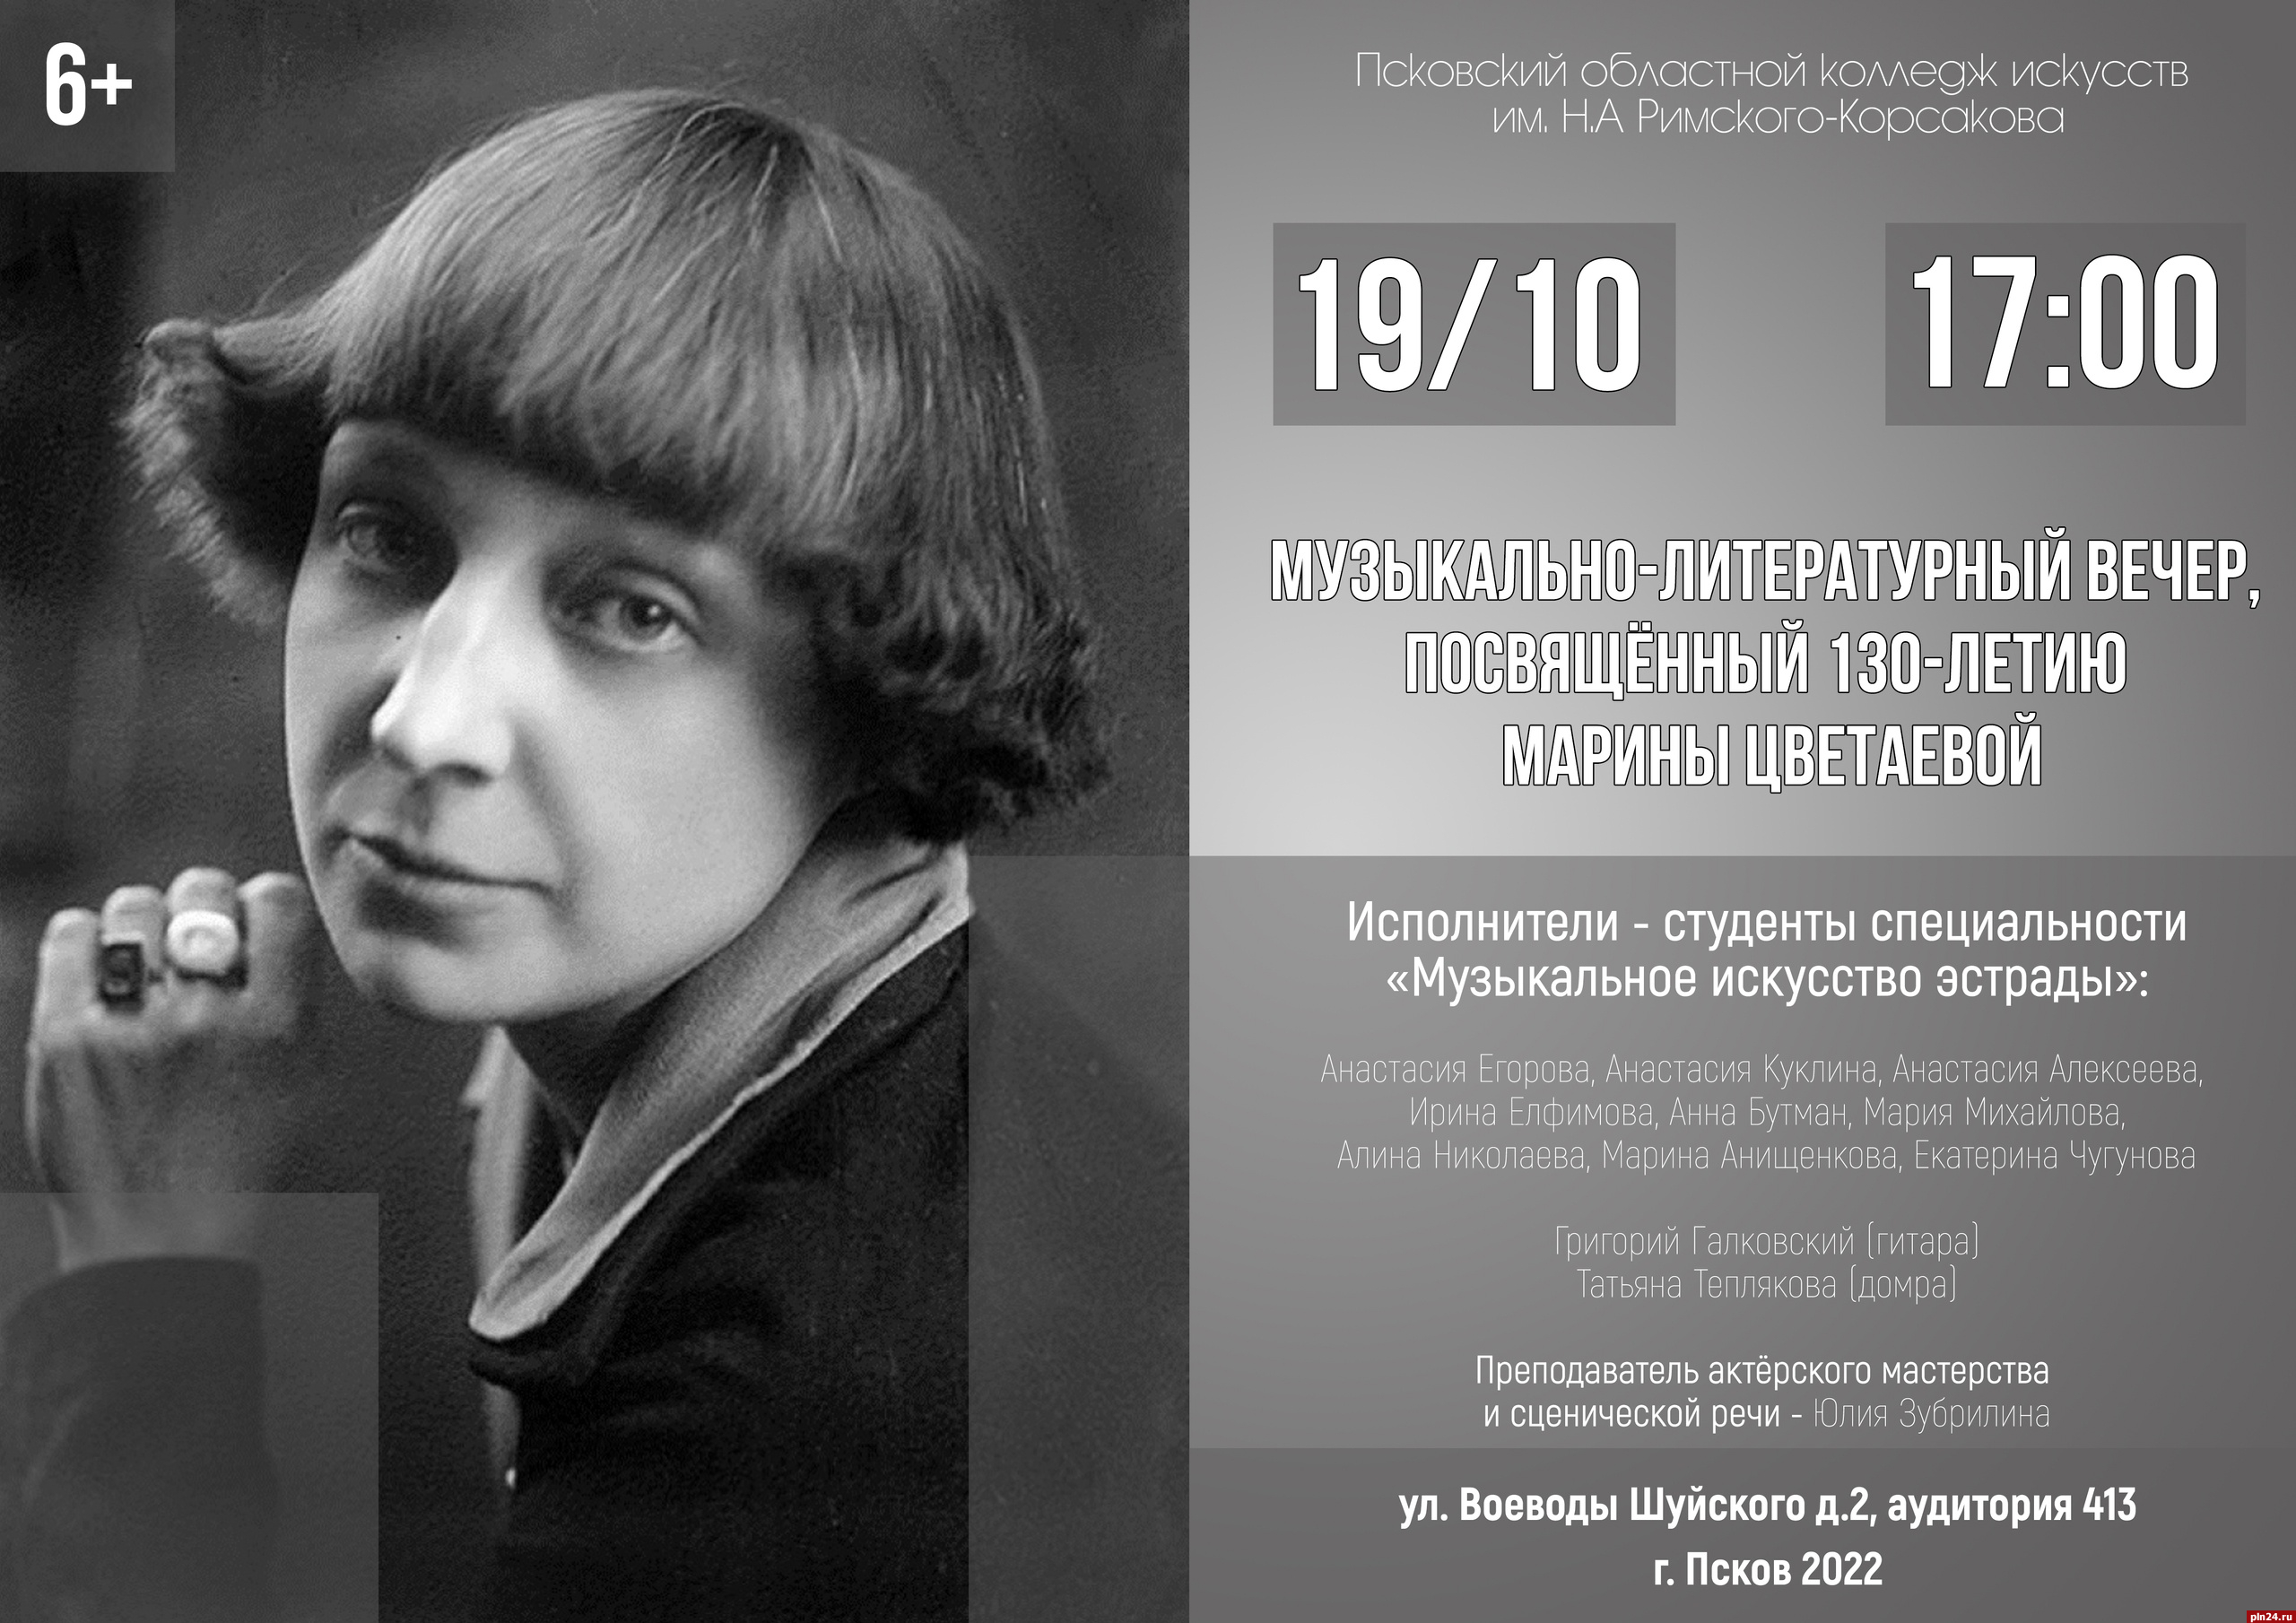 Музыкально-литературный вечер к 130-летию Марины Цветаевой пройдёт в Пскове